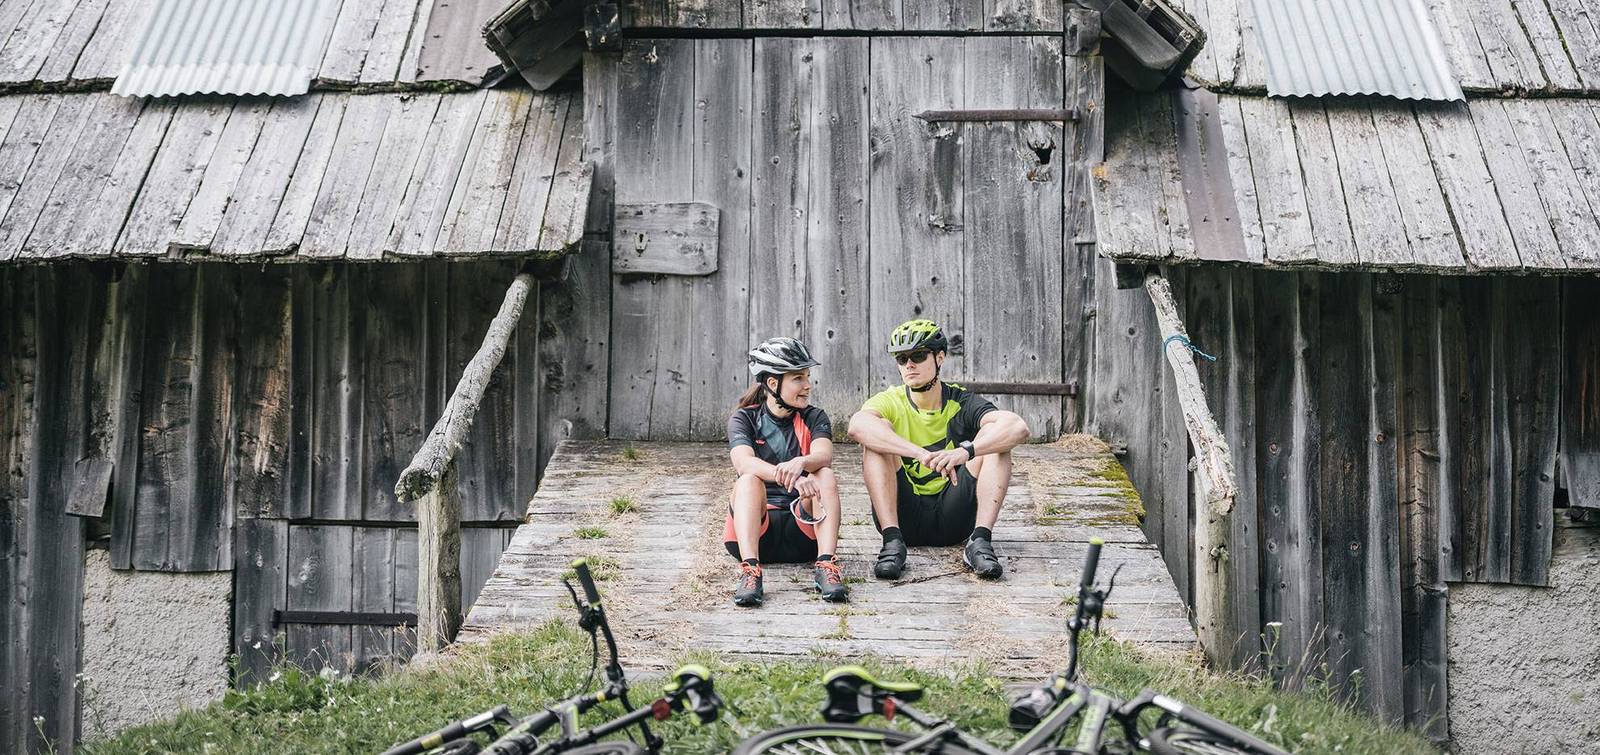 Zwei Mountainbiker die gerade eine Pause vor einer alten Hütte machen.